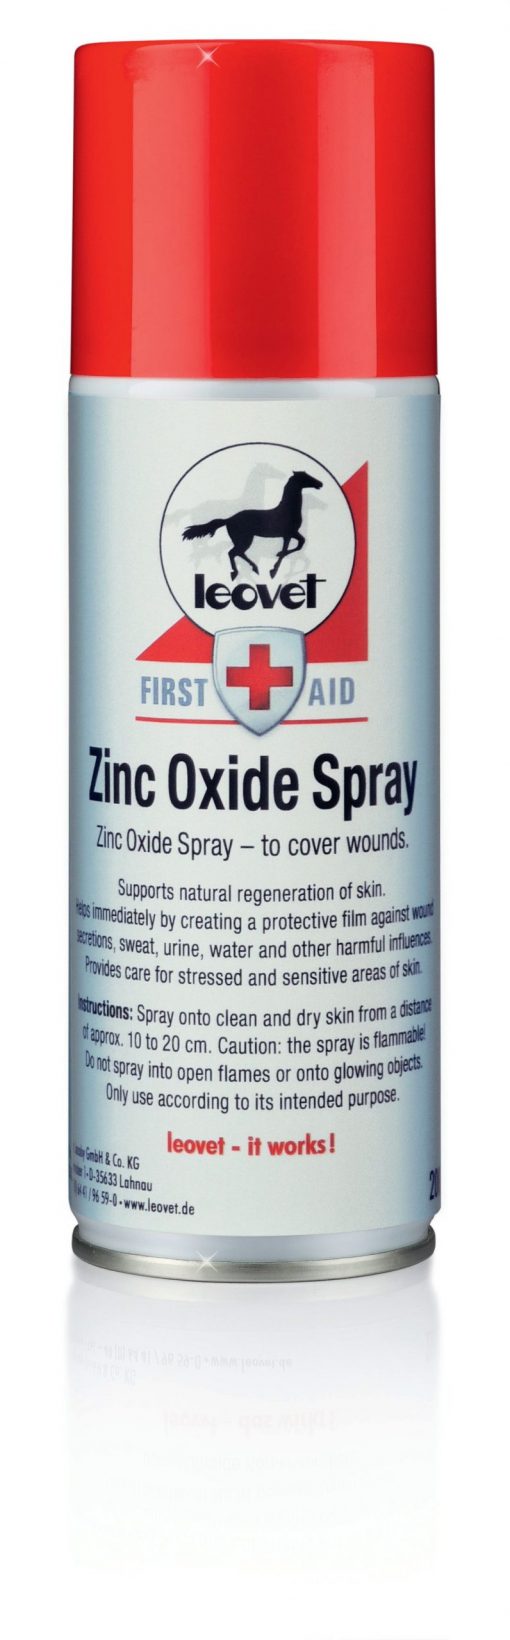 zinc oxide spray